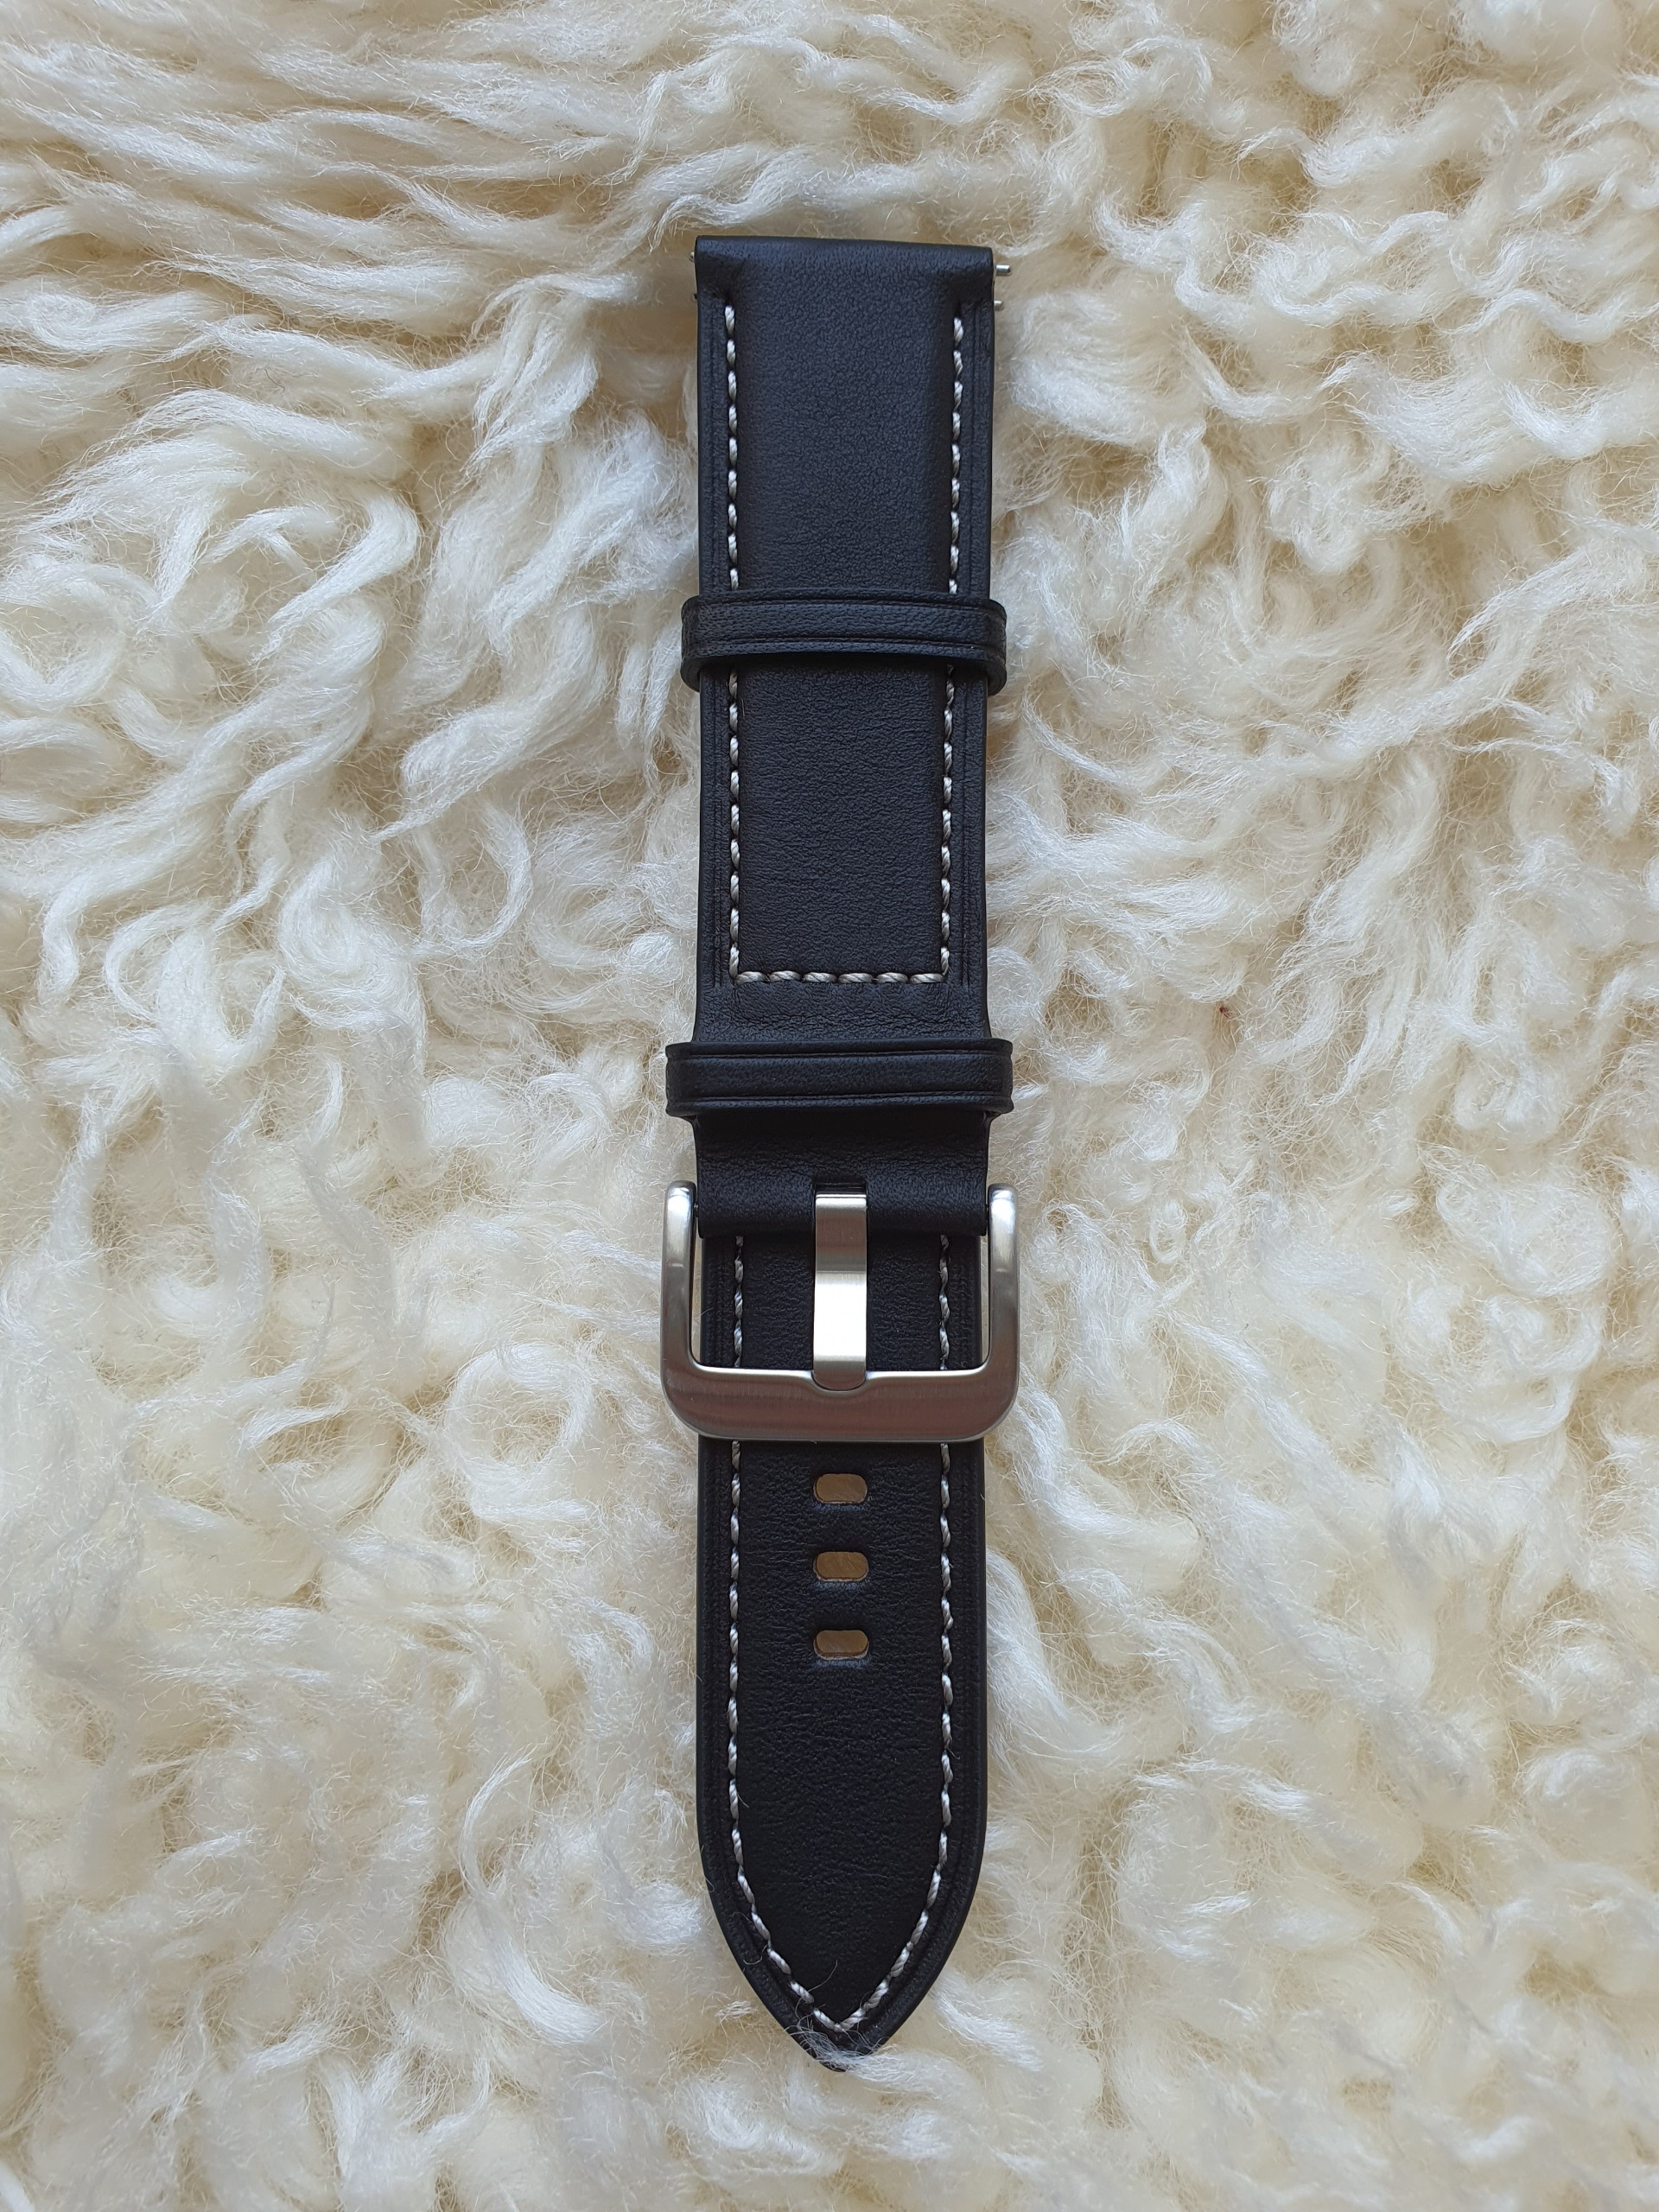 Dây Da Cao Cấp Dành Cho Đồng Hồ Thông Minh Smart Watch Samsung Galaxy Watch 3 Bản 45 Size Chốt 22mm Premium Genuine Leather